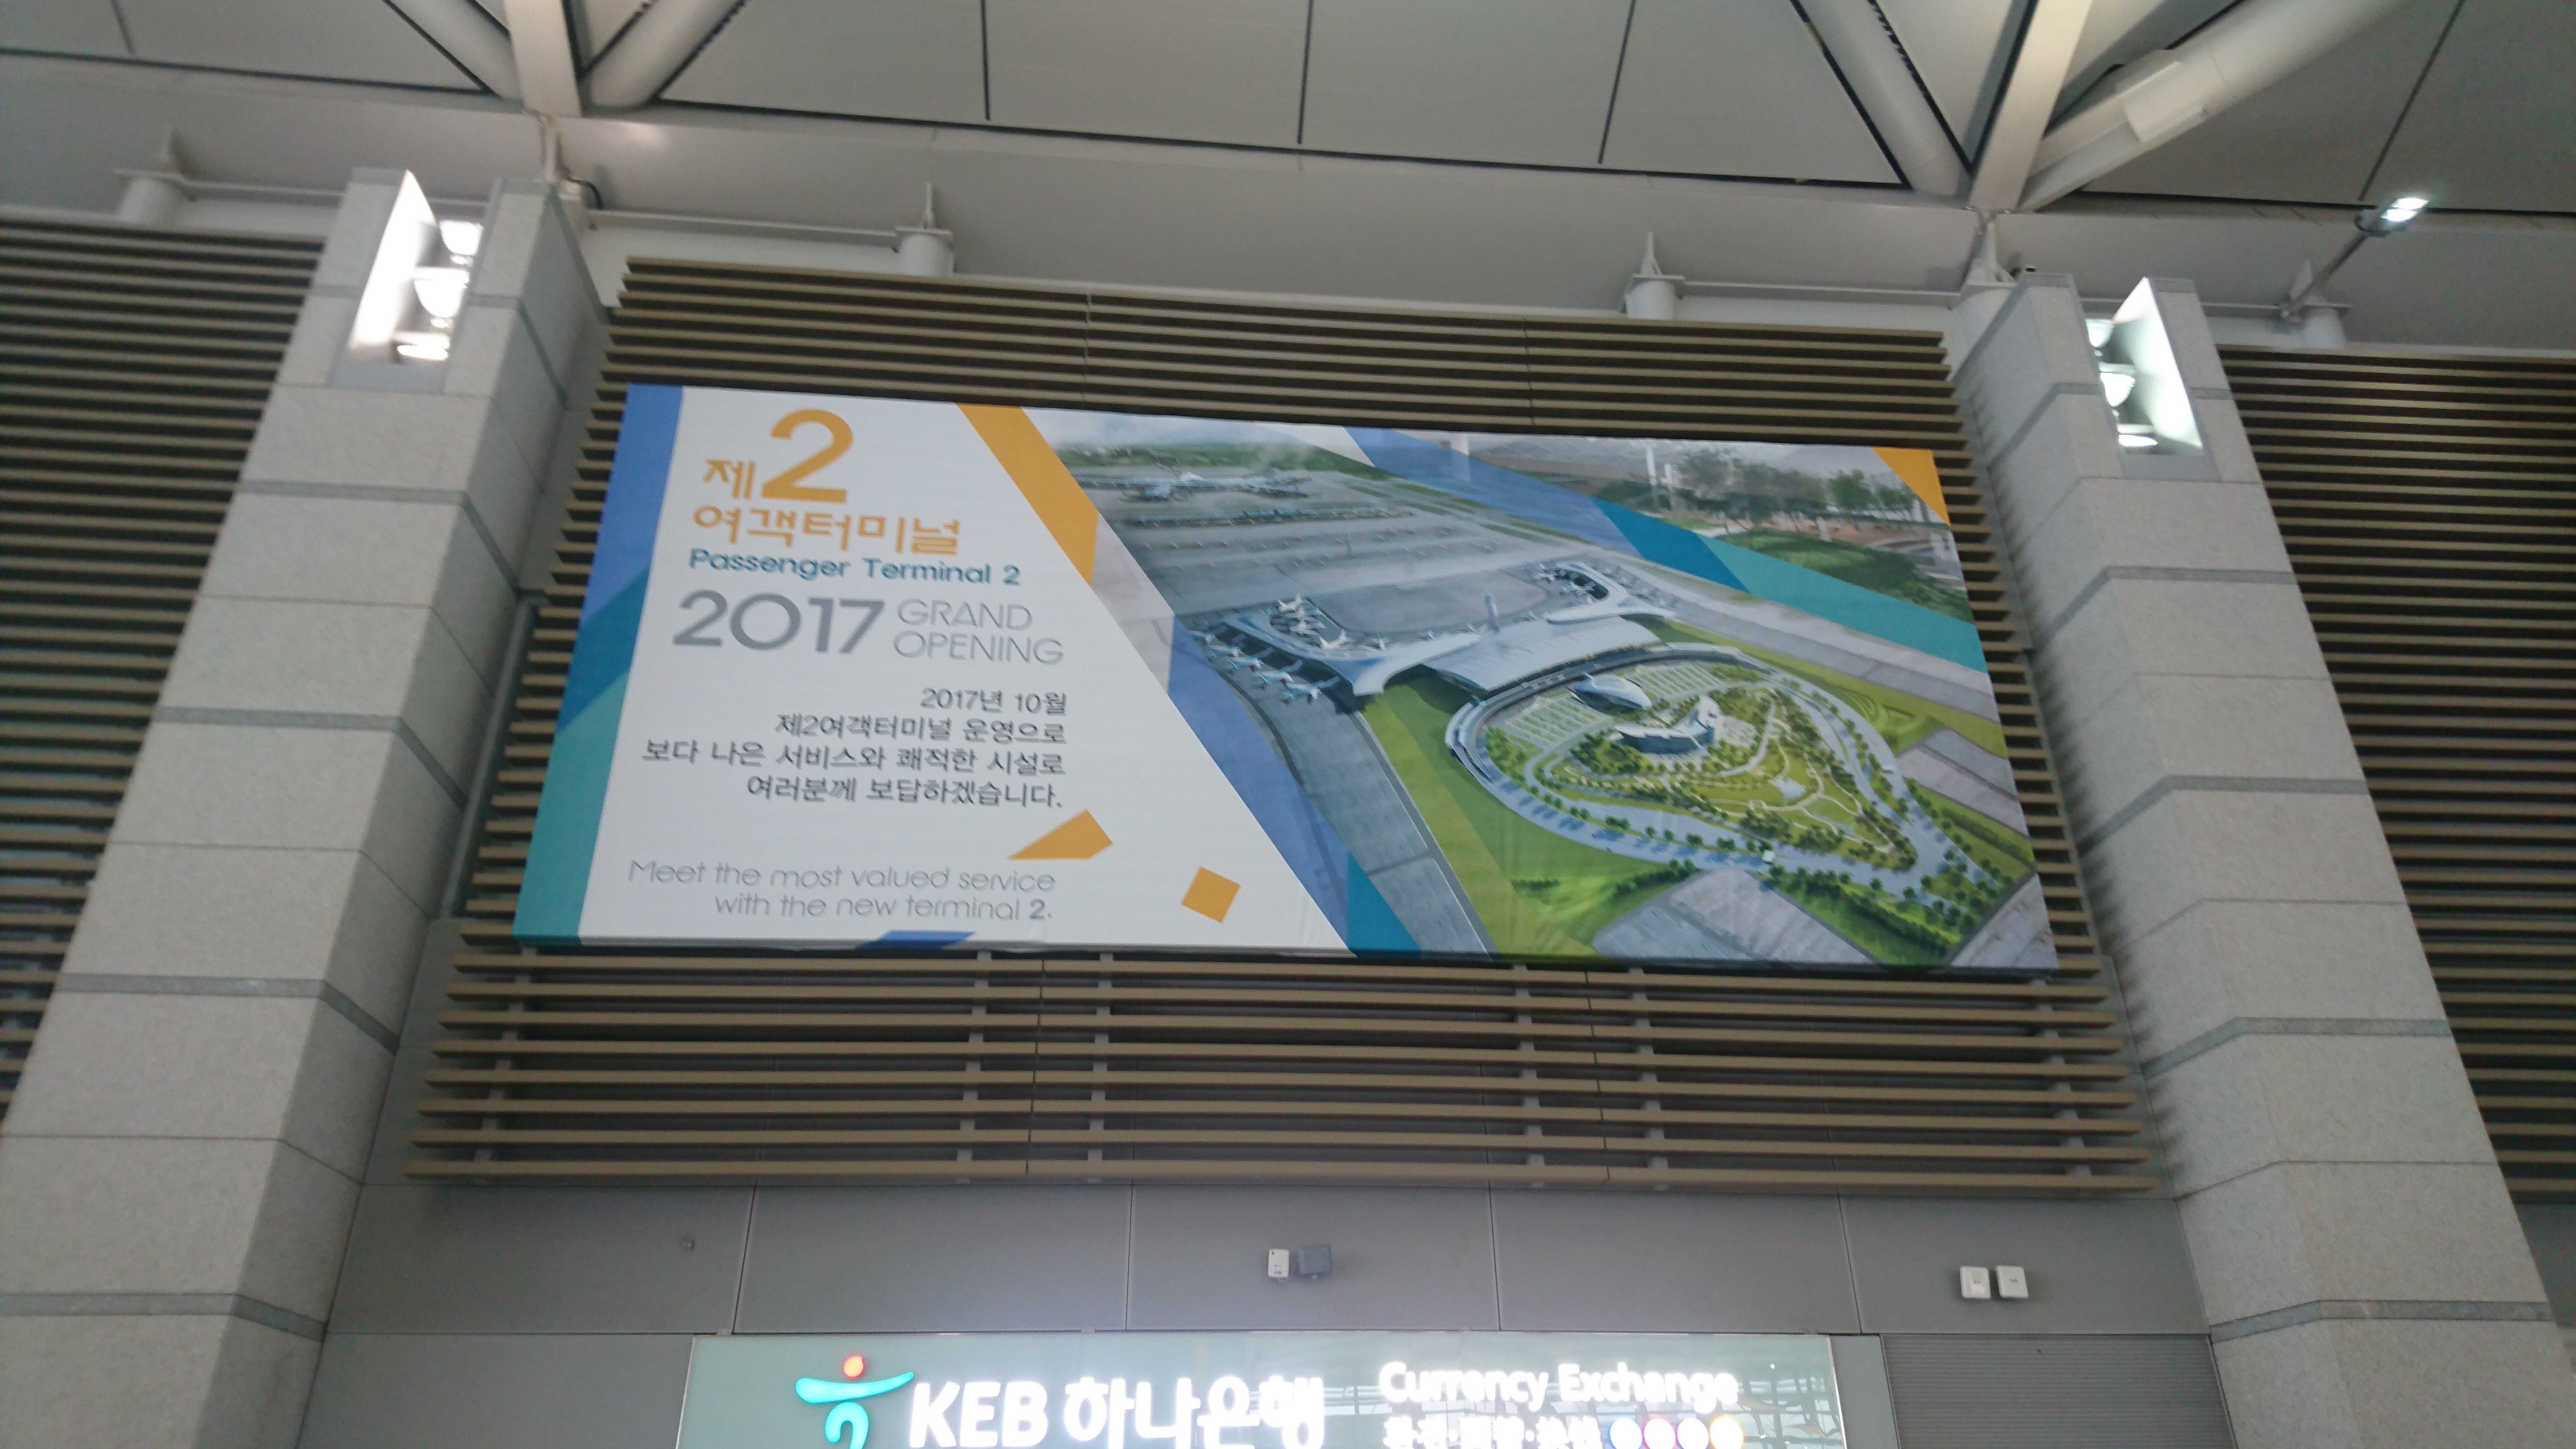 ２０１７年には仁川国際空港に新しい第二旅客ターミナルができるようです。成田も負けないよう頑張ってほしいところです。